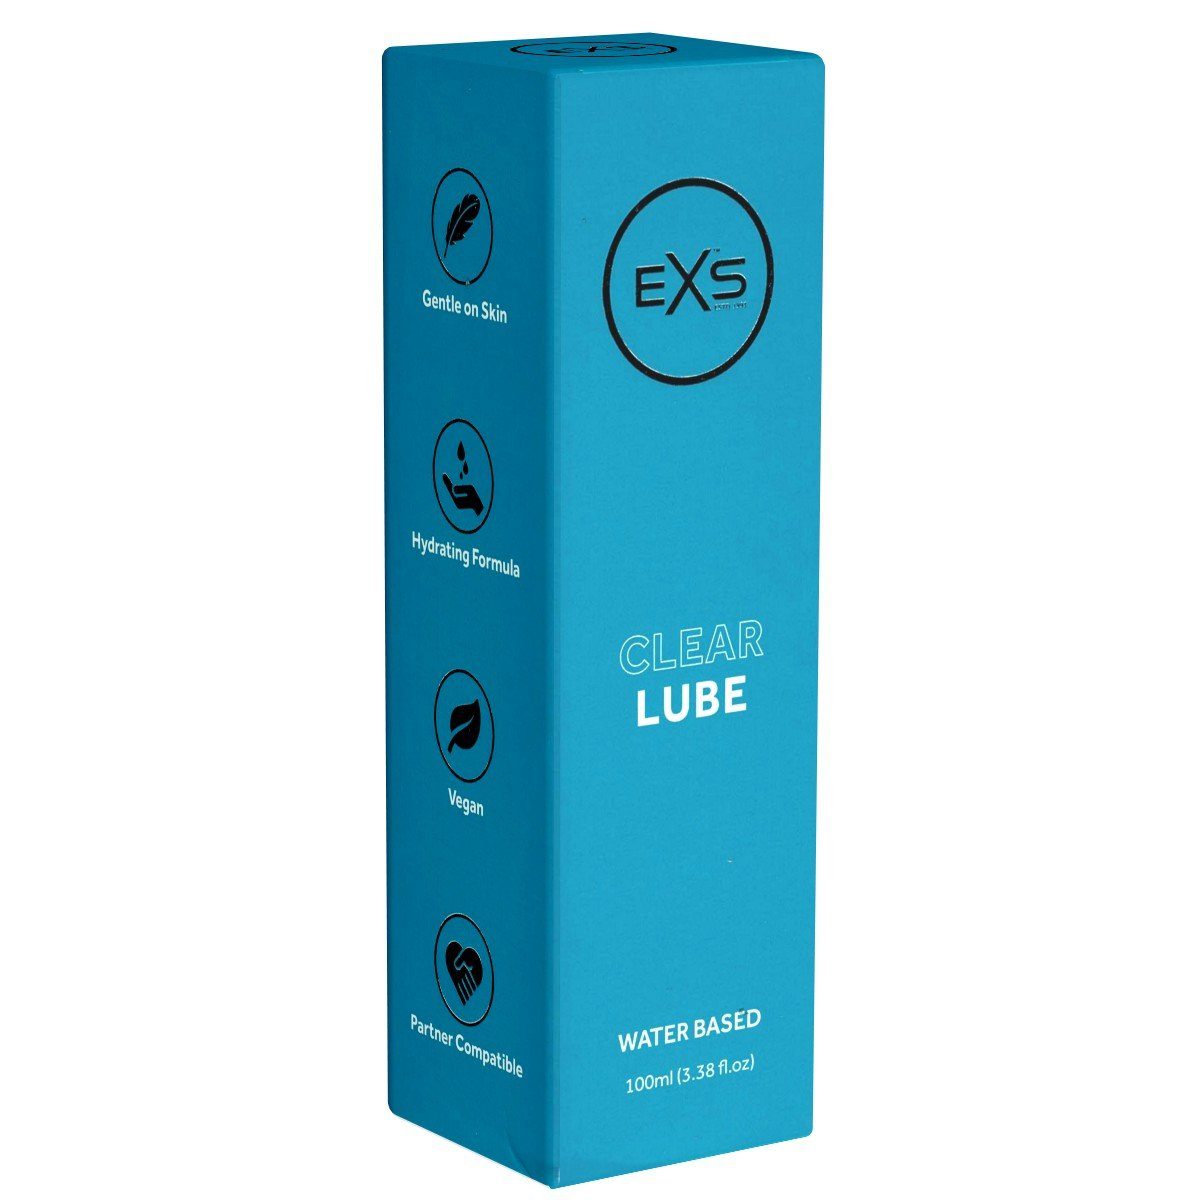 EXS Gleitgel lange Lube Flasche hypoallergen, mit 100ml, Clear - gleitfähig parabenfreies transparent, Gleitgel